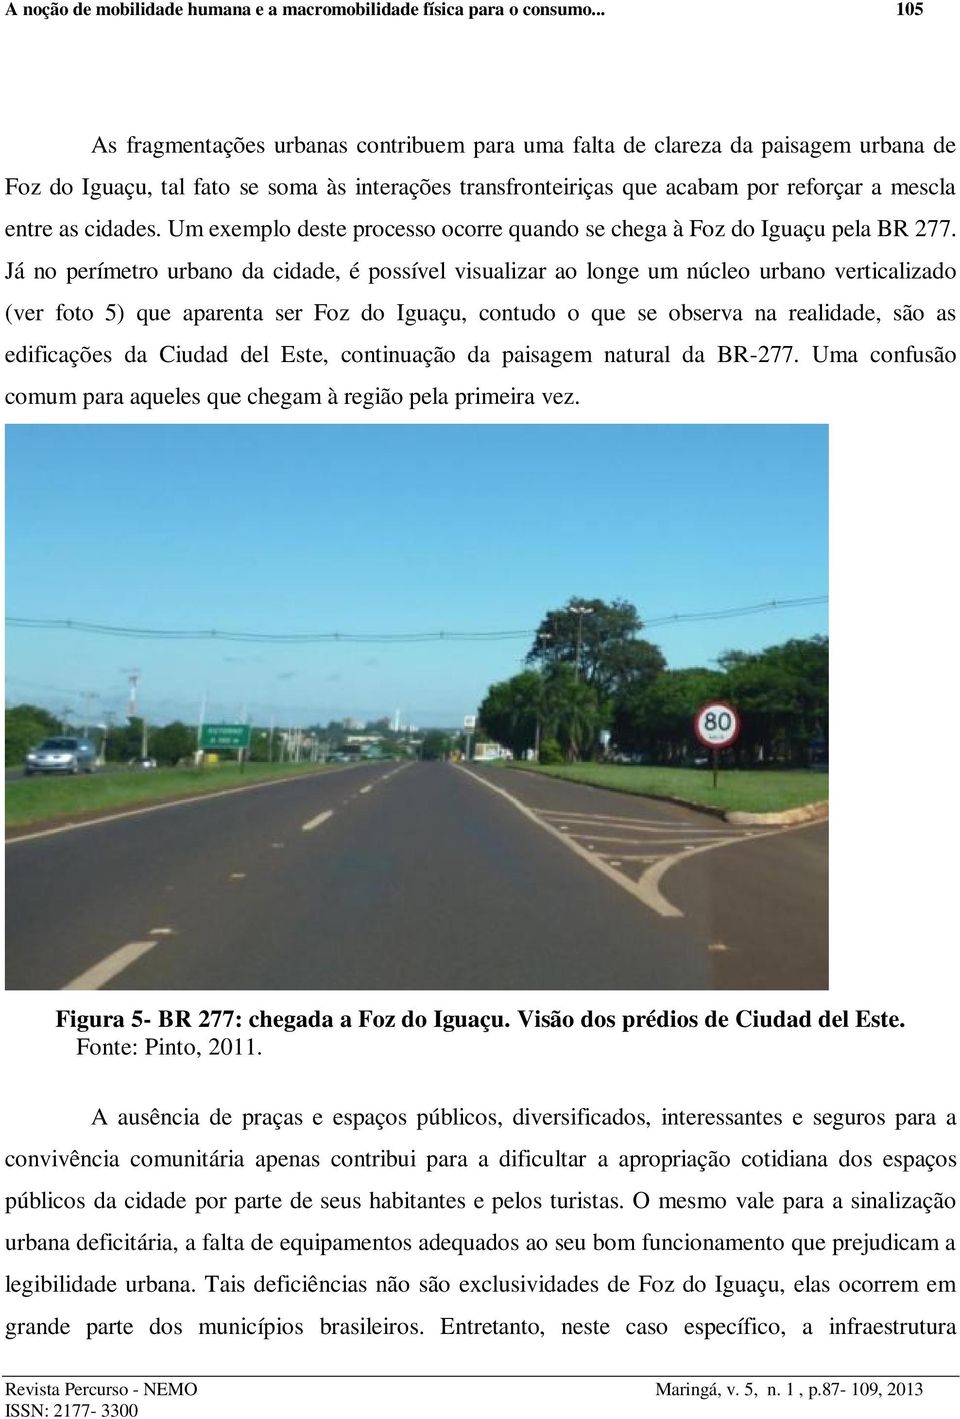 cidades. Um exemplo deste processo ocorre quando se chega à Foz do Iguaçu pela BR 277.